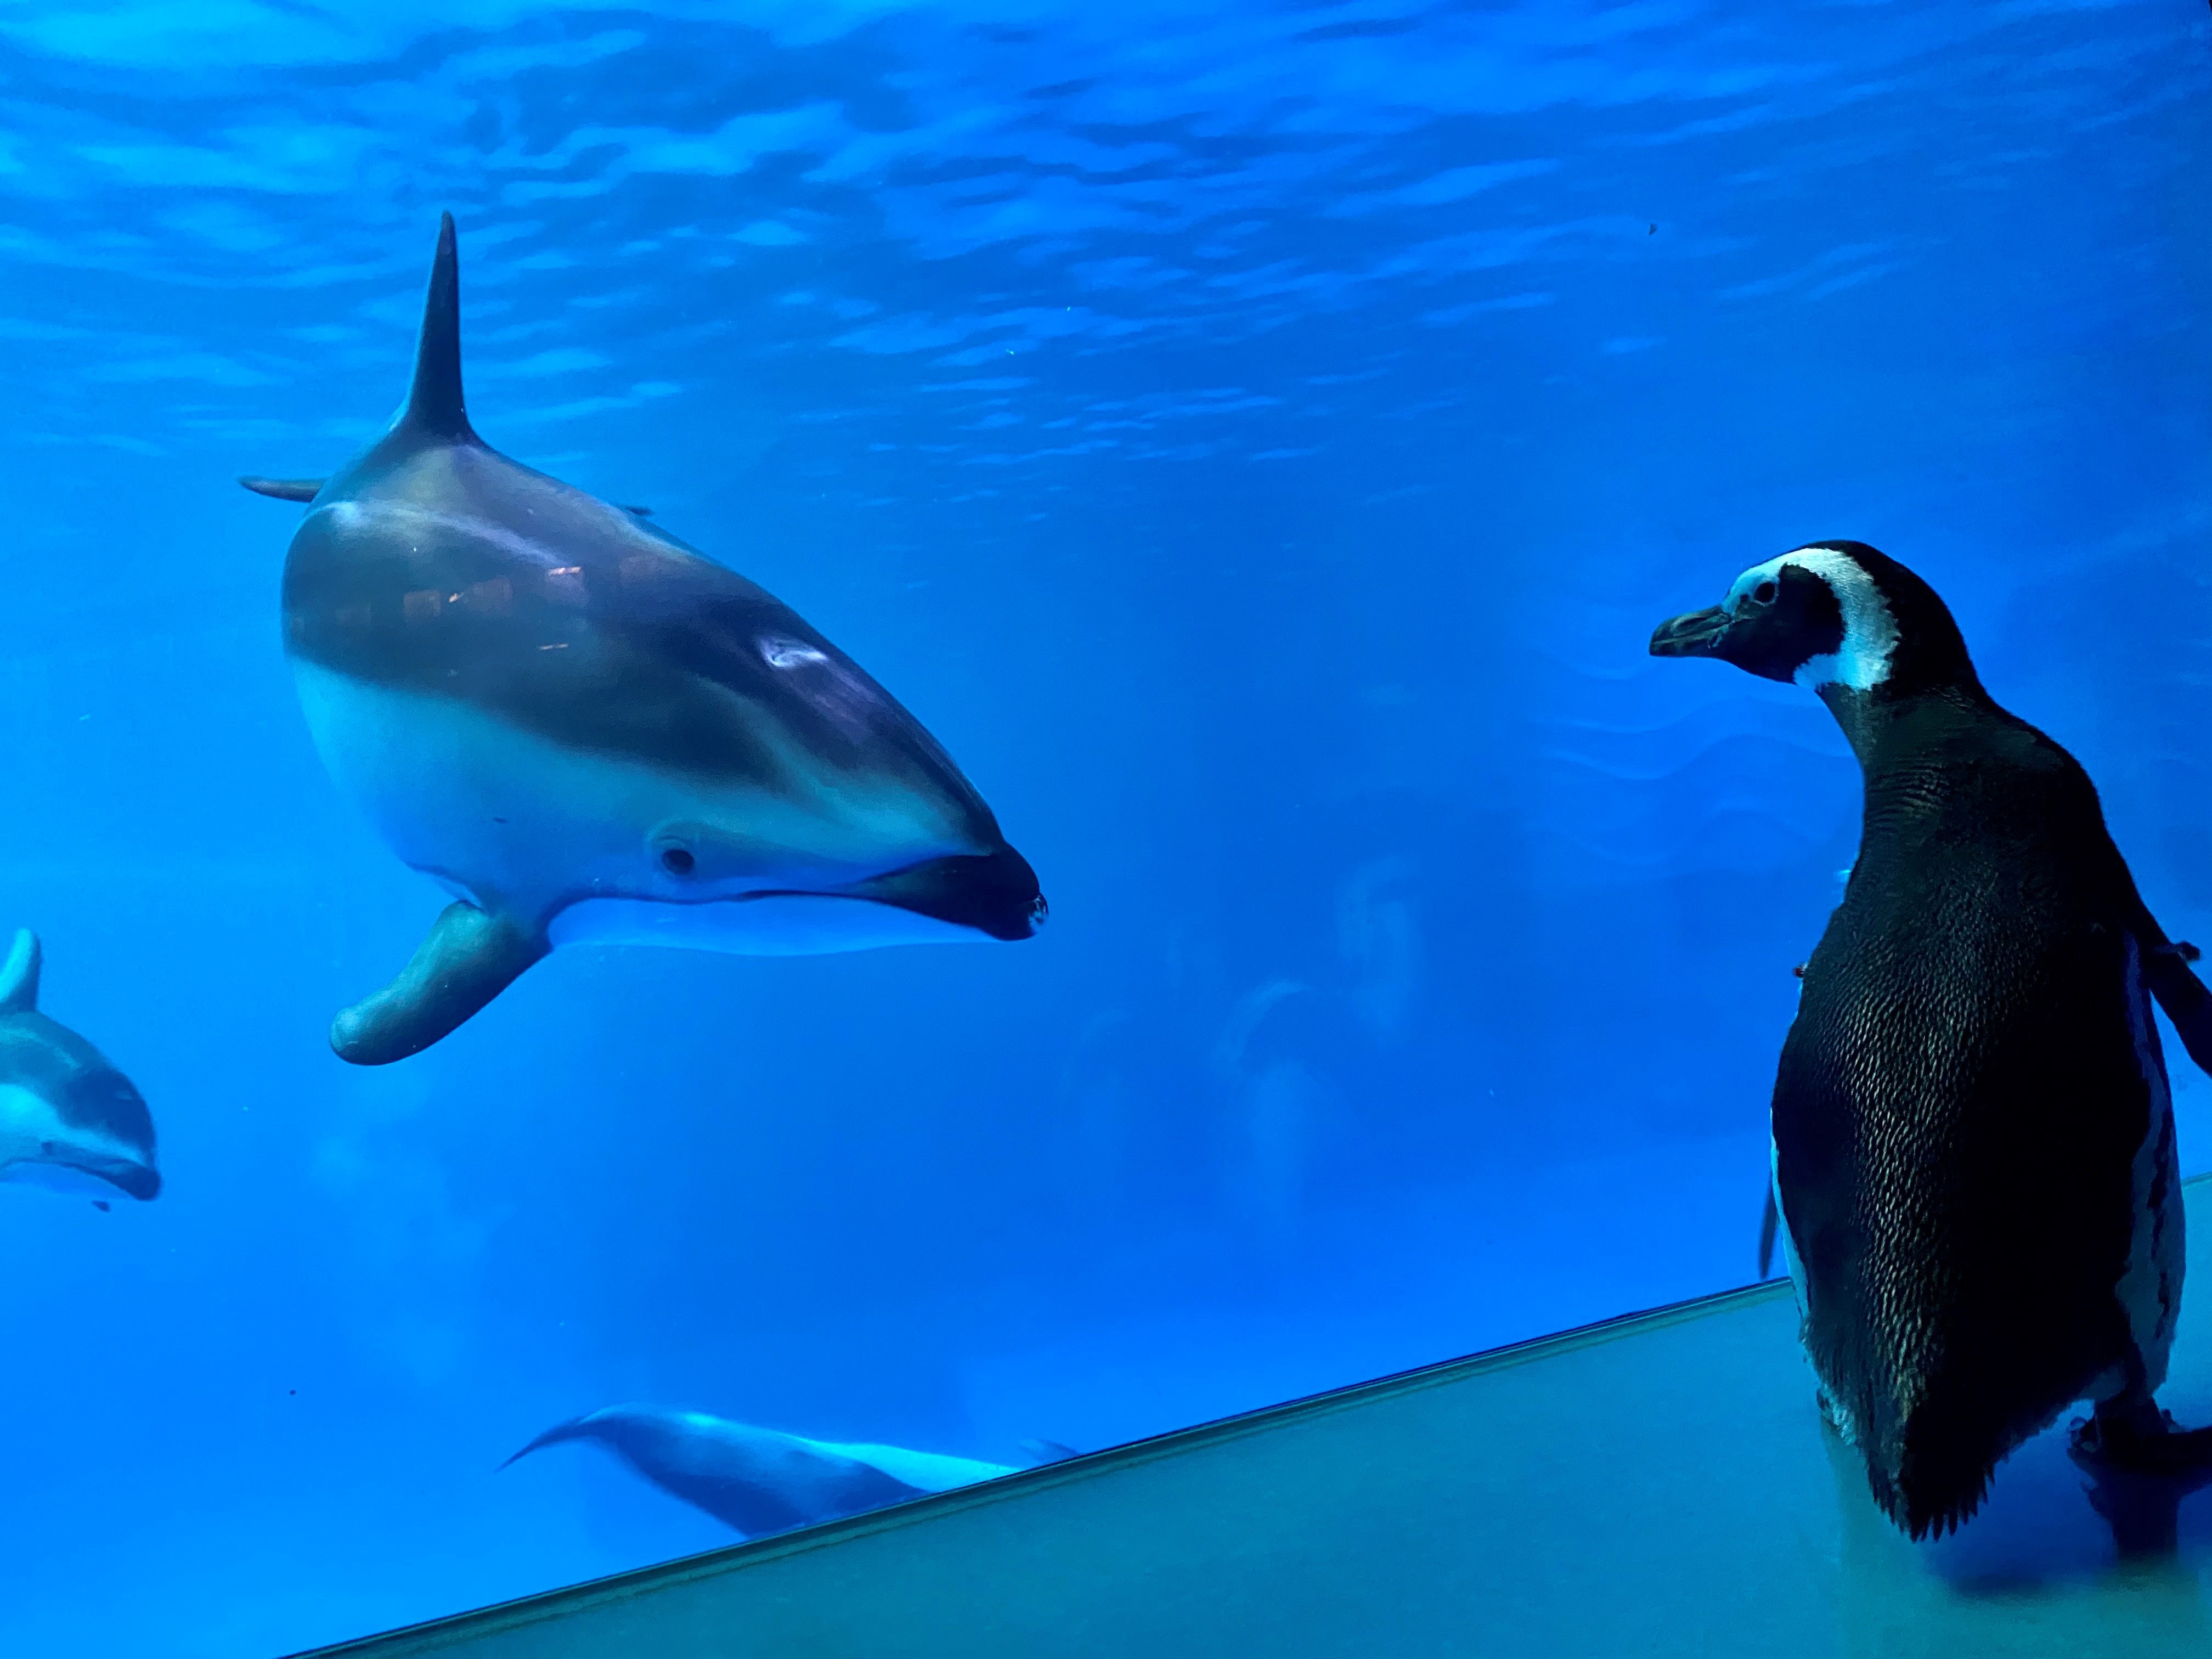 Monte the Magellanic penguin checks in on the aquarium's dolphins